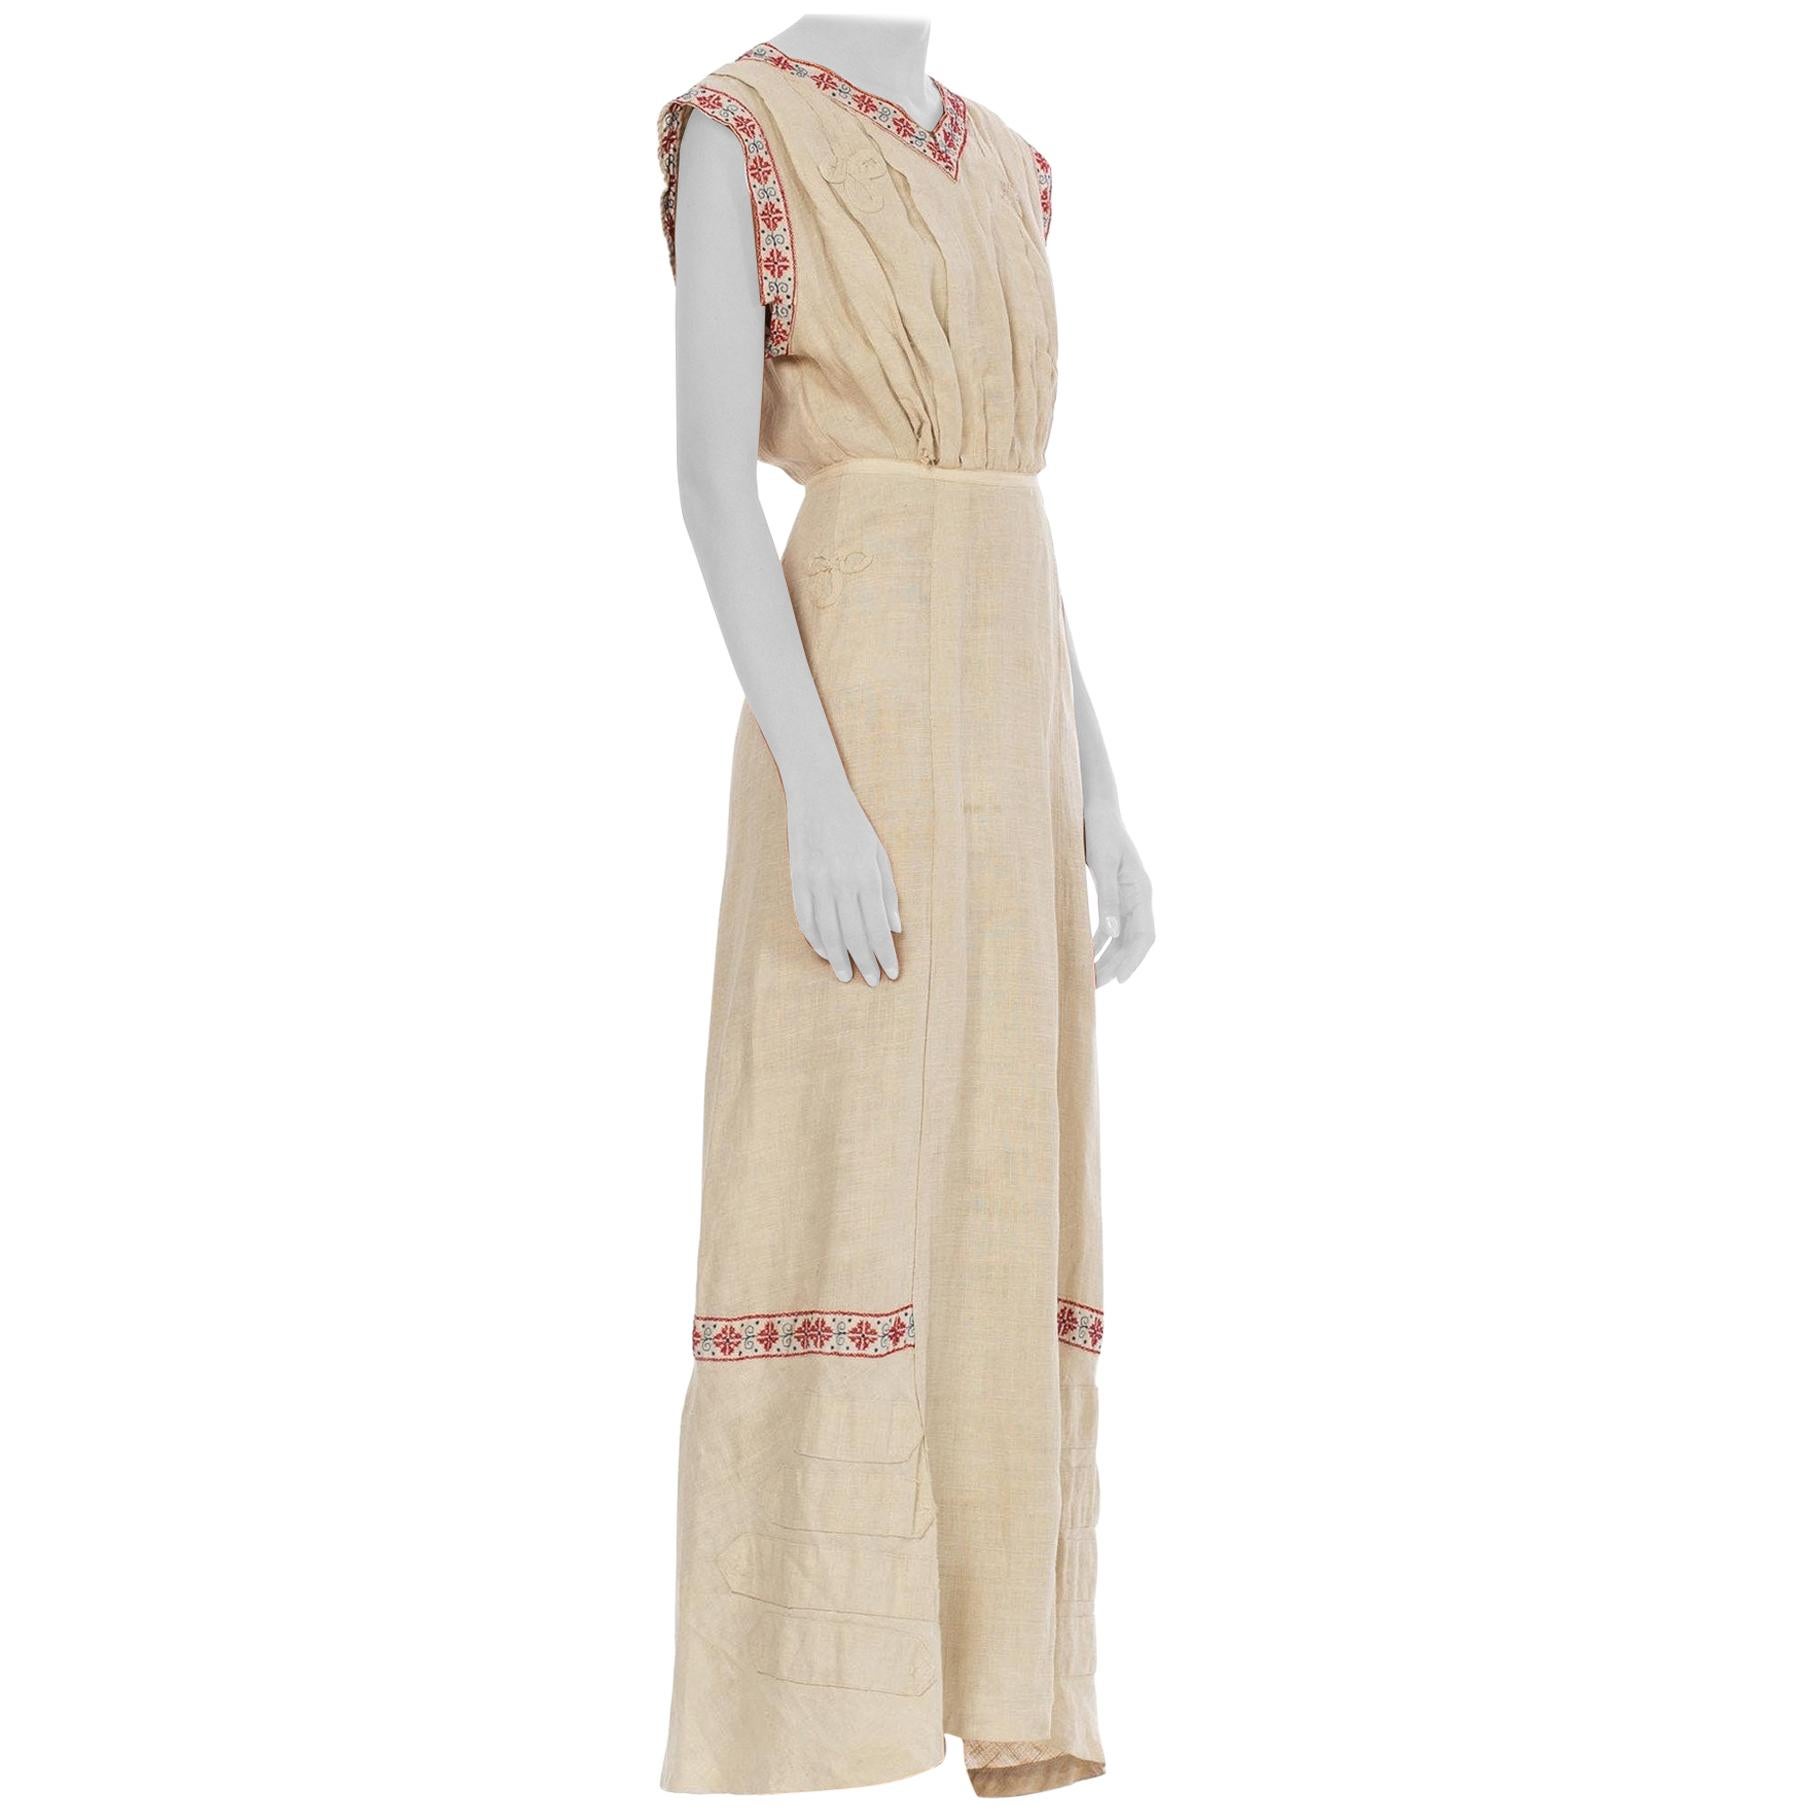 Edwardian Beige Linen Walking Dress With Bias Cut Train & Red Folk Embroidery